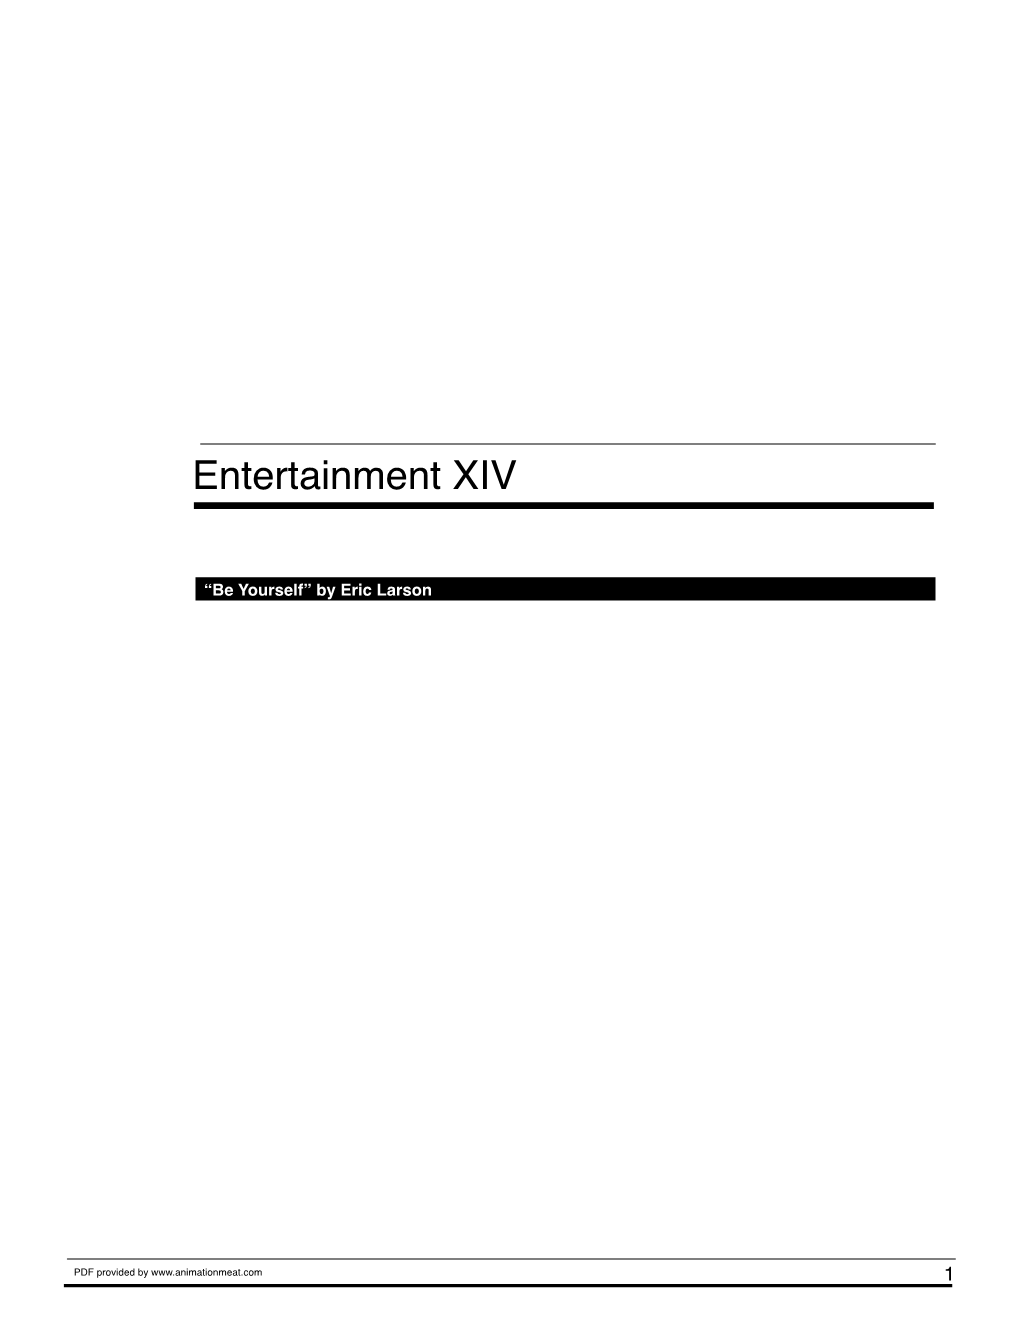 Entertainment XIV